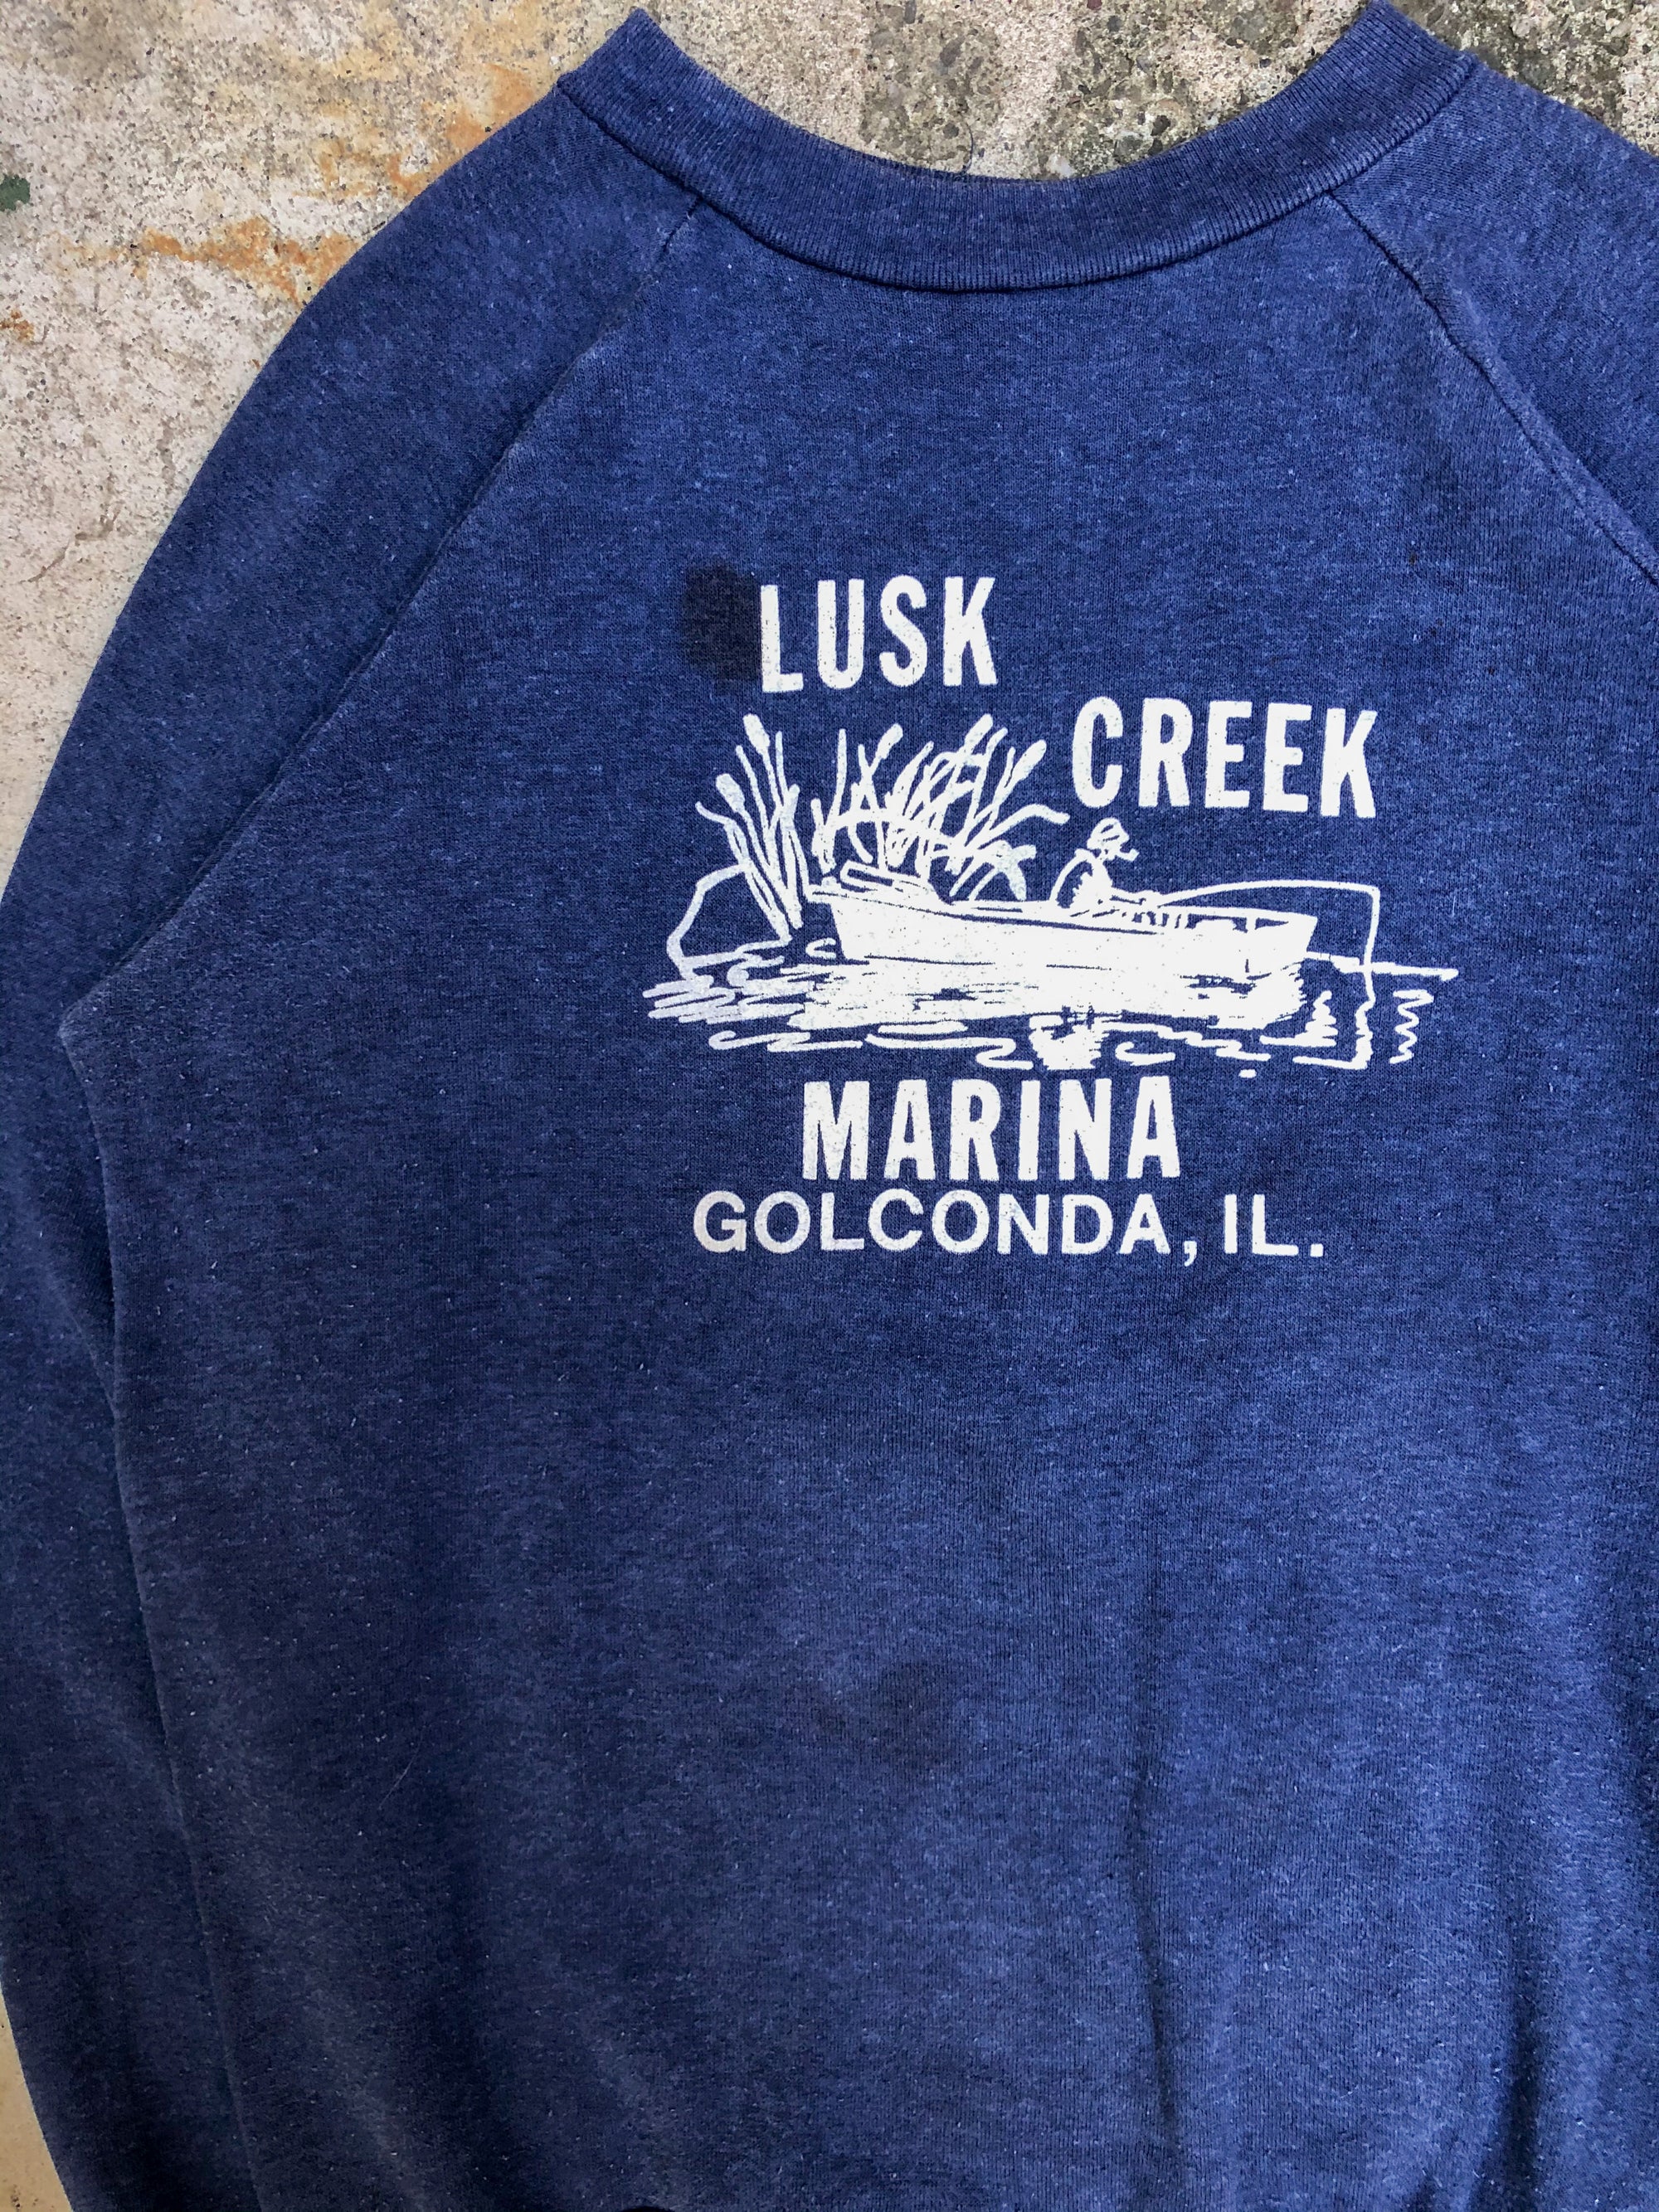 1980s Blue “Lusk Creek” Raglan Sweatshirt (M)